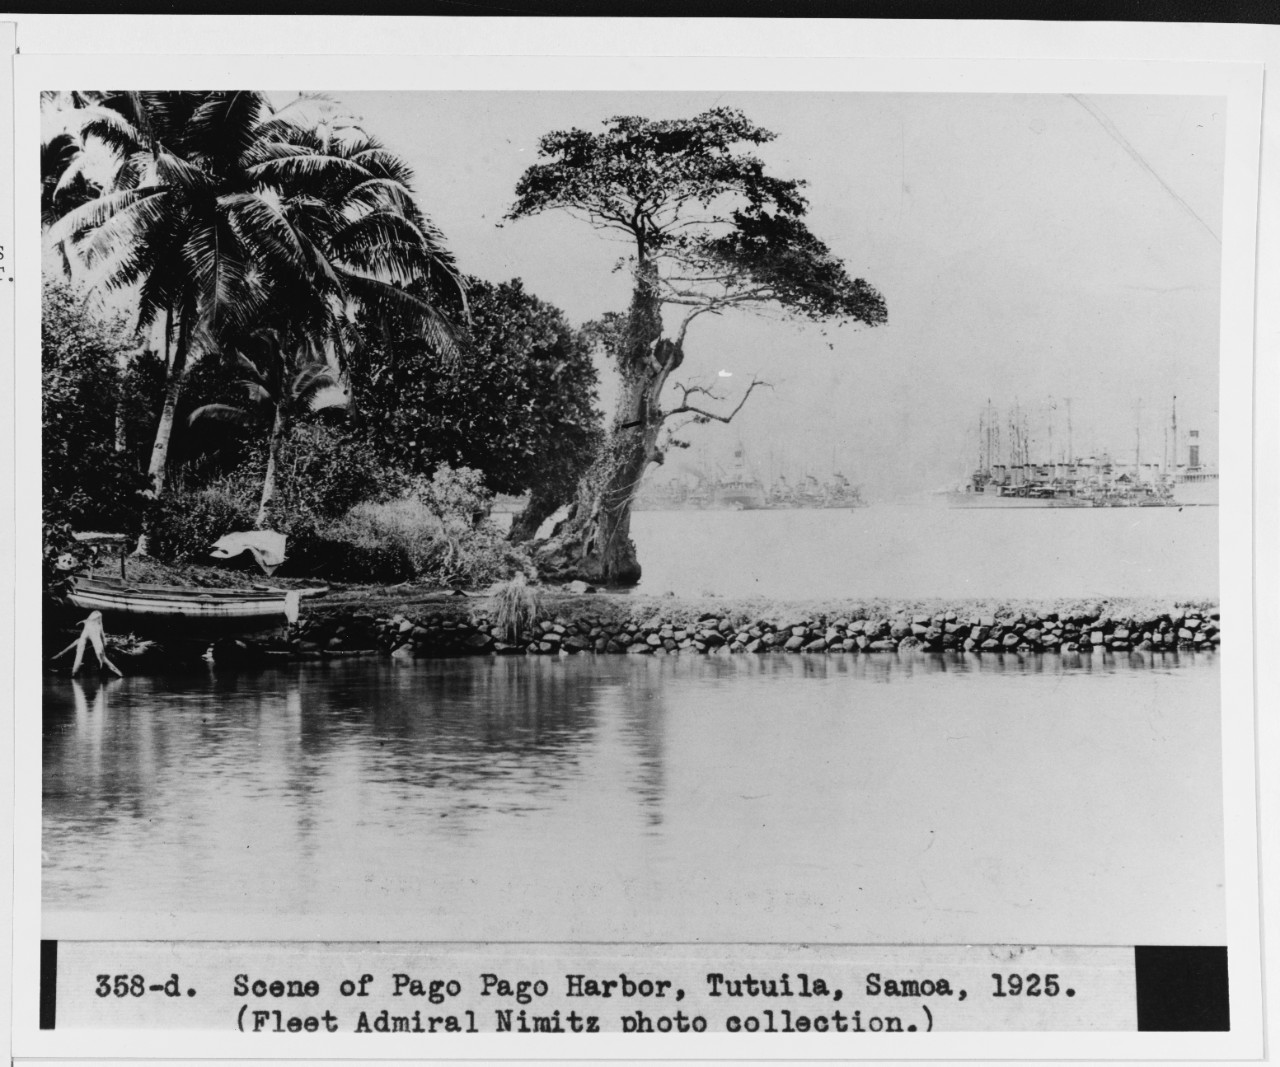 Scene of Pago Pago, Tutulia, Samoa, September 1925